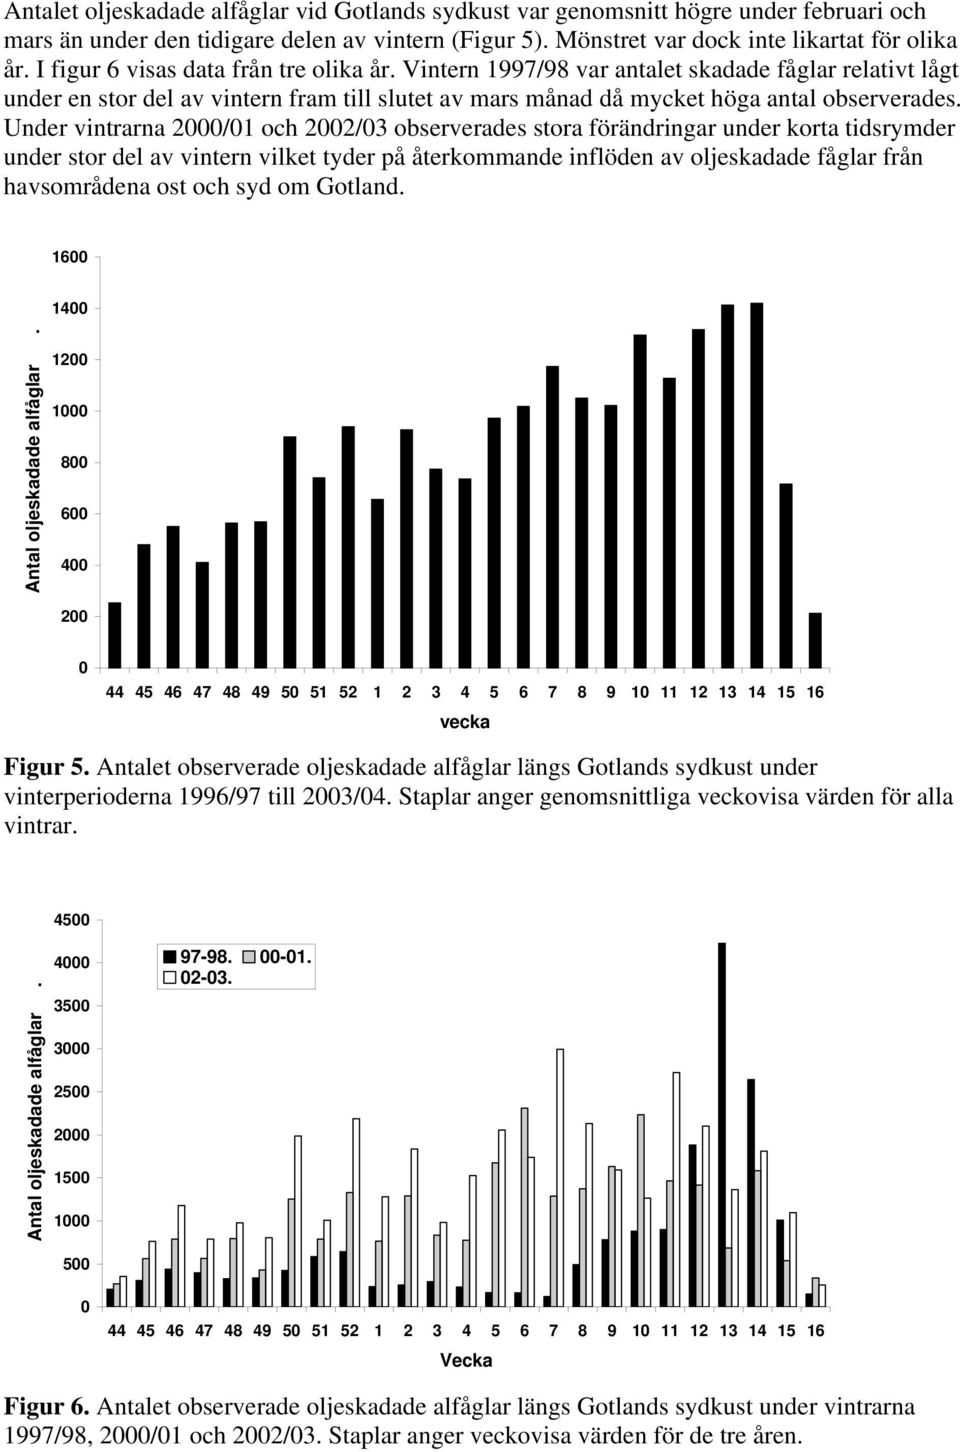 Under vintrarna 2000/01 och 2002/03 observerades stora förändringar under korta tidsrymder under stor del av vintern vilket tyder på återkommande inflöden av oljeskadade fåglar från havsområdena ost